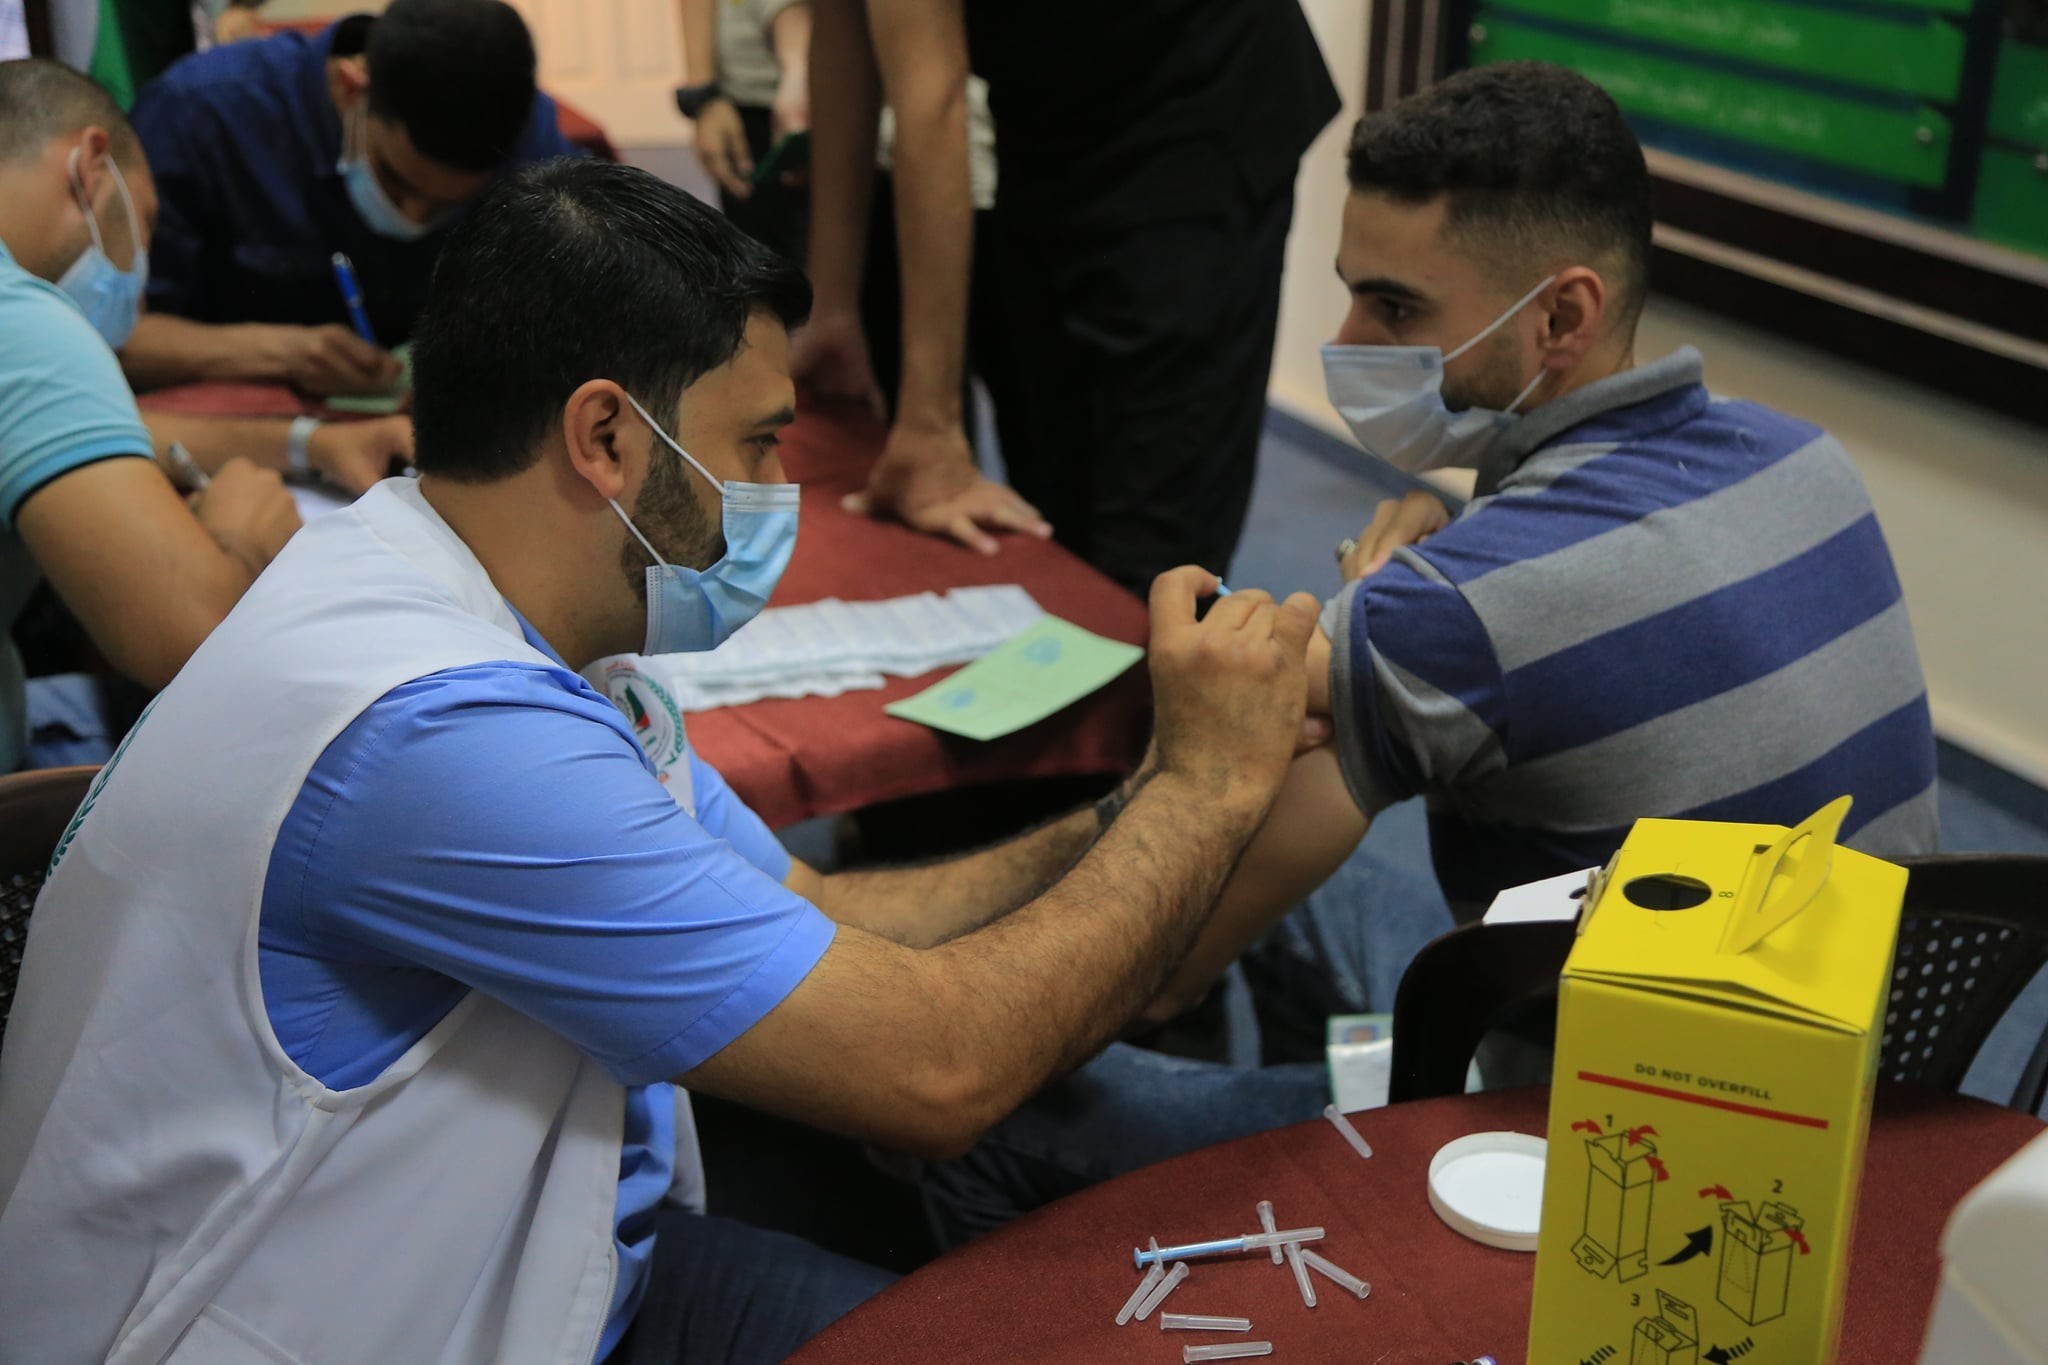 الجامعة الإسلامية بغزة تُطلق حملة لتطعيم طلبتها ضد "كورونا"